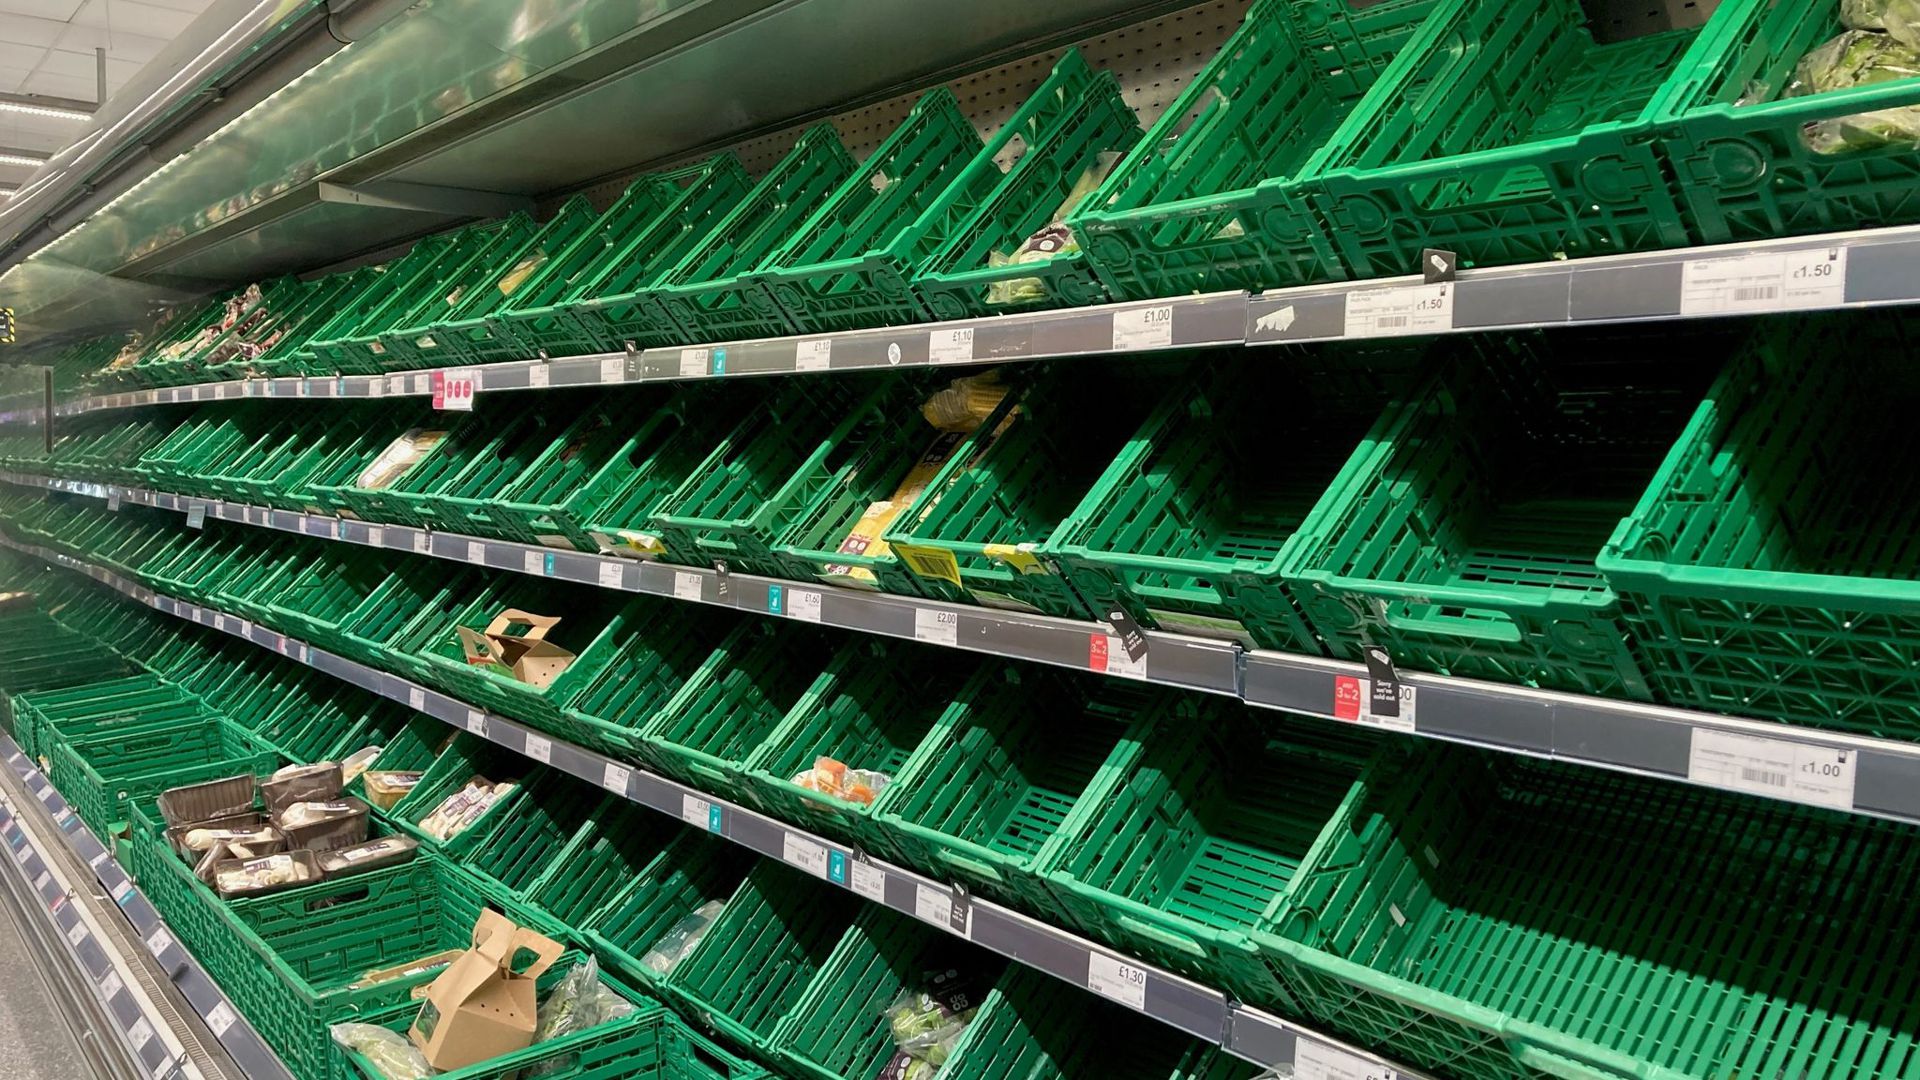 Leere Regale in der Gemüseabteilung eines Co-op-Supermarkts in London. Britische Bauern warnen angesichts enorm gestiegener Preise vor Versorgungsproblemen.